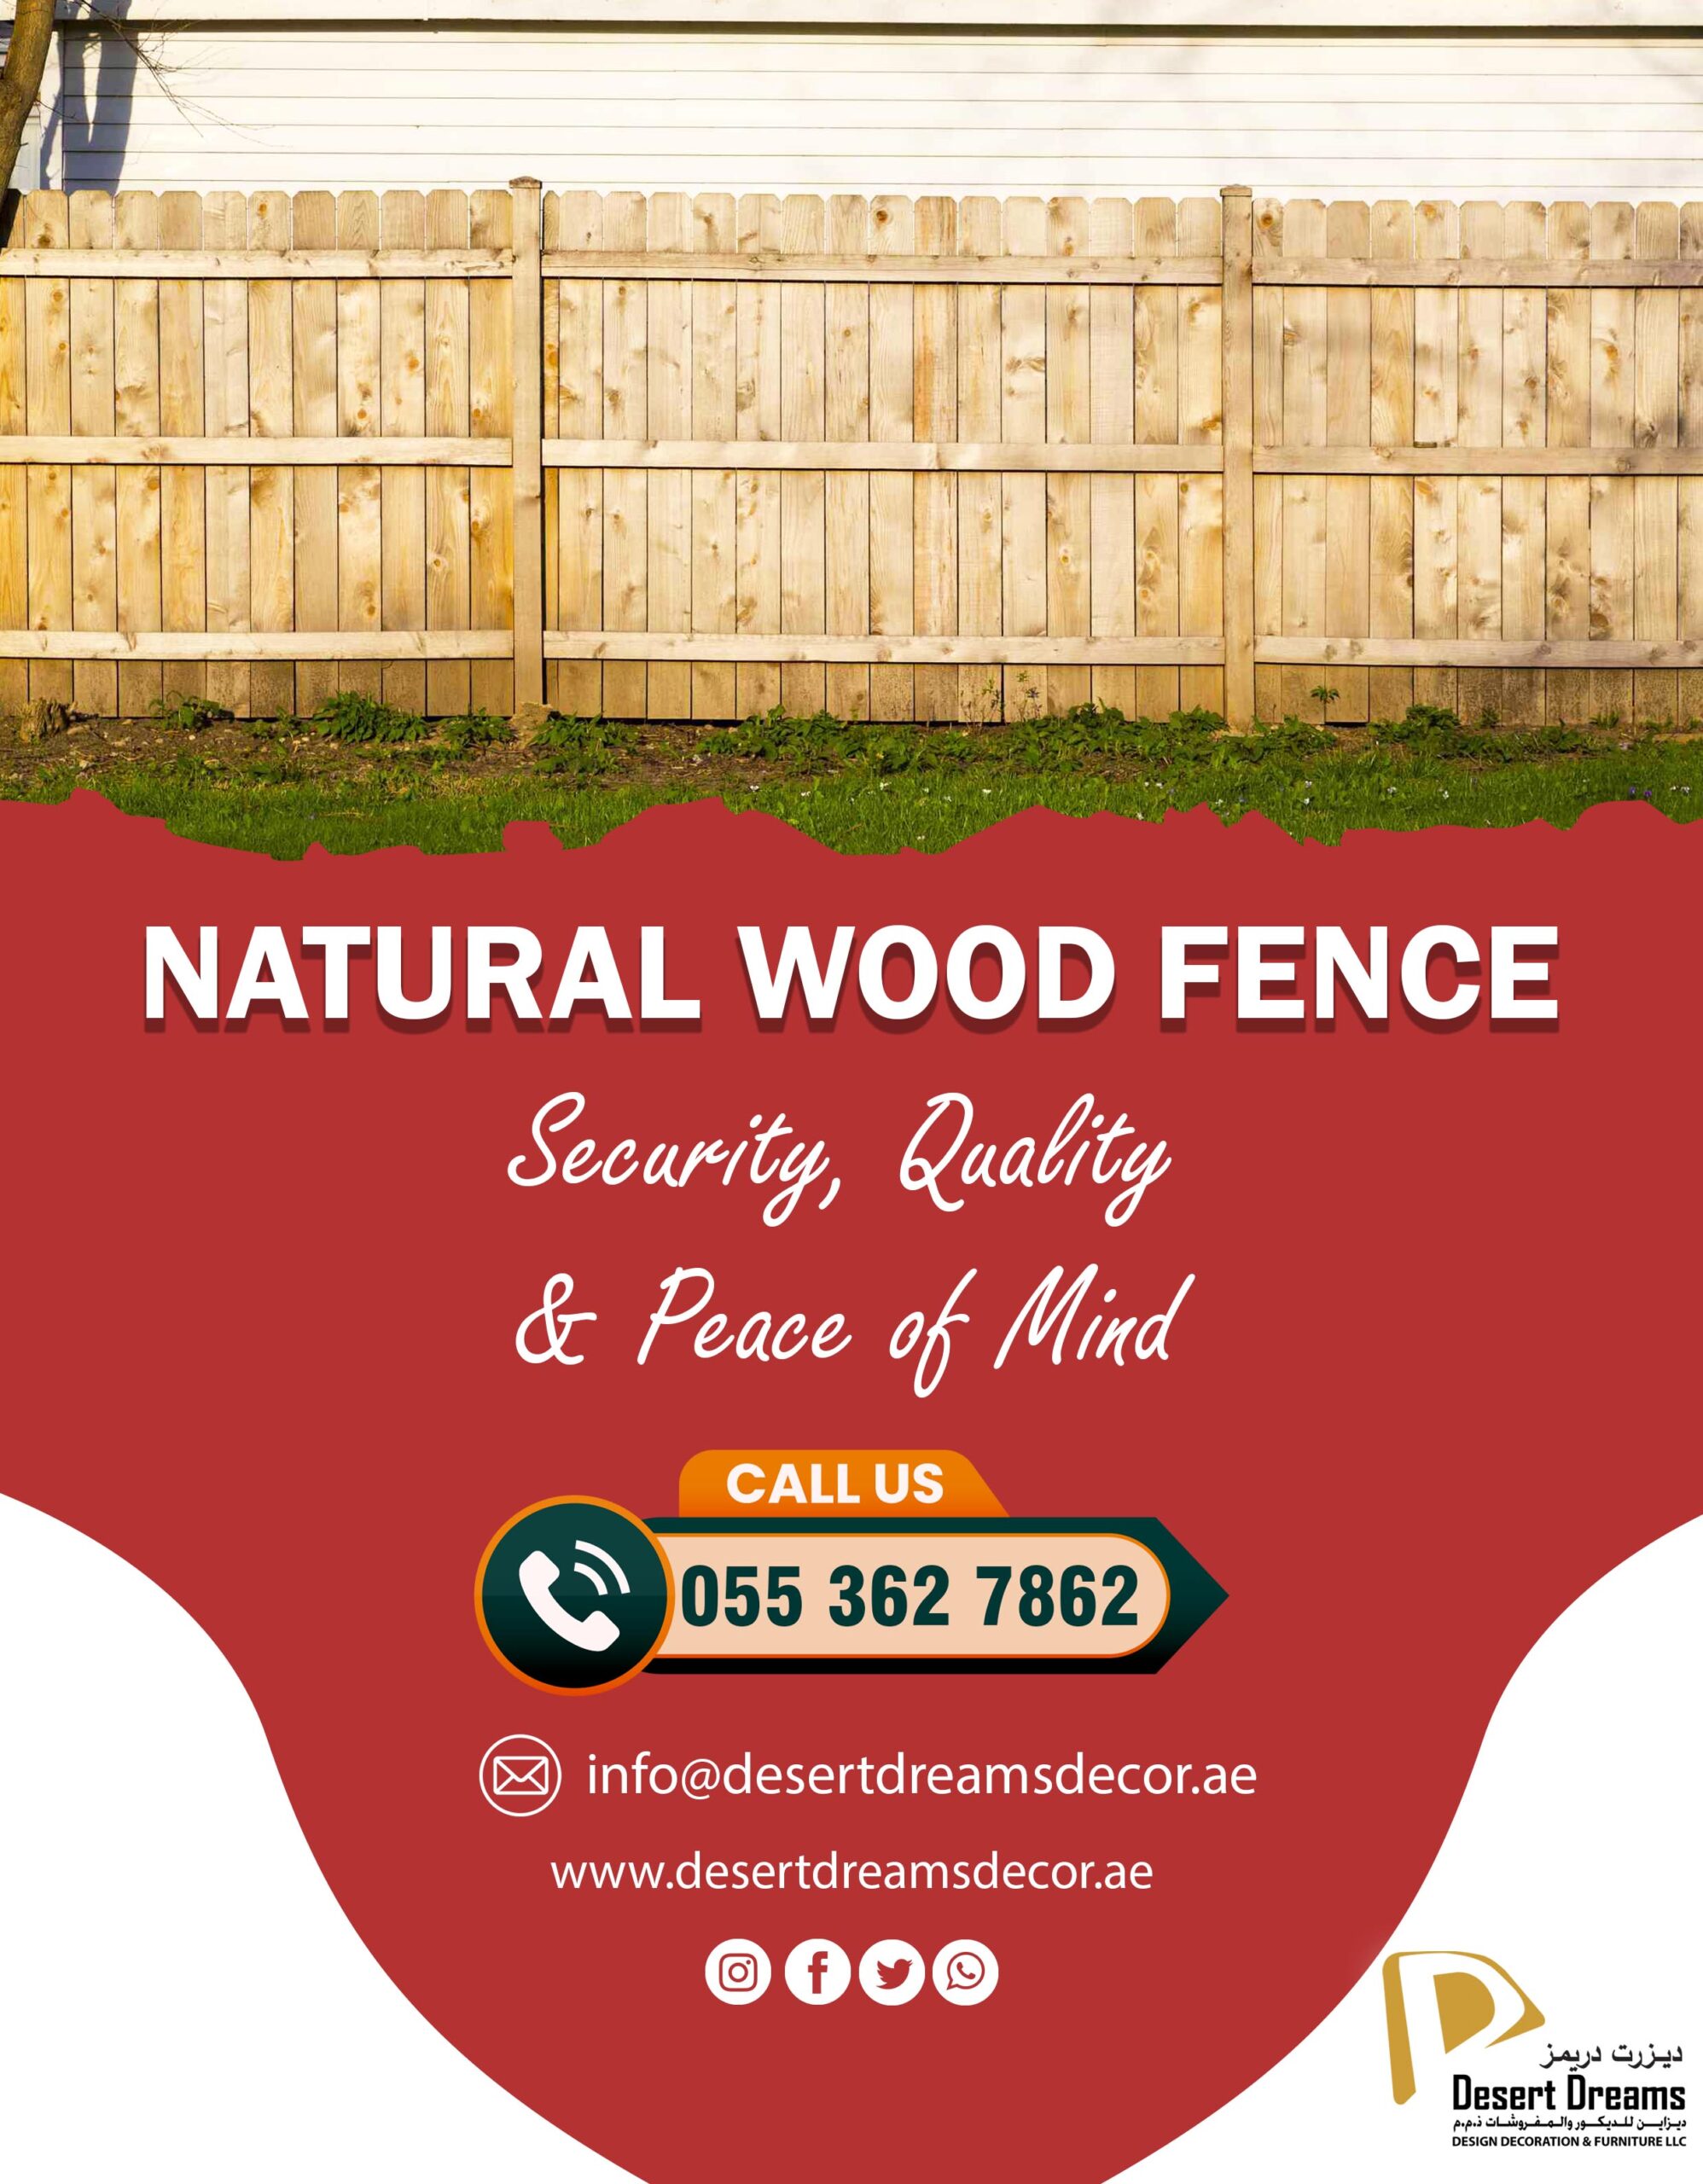 Wooden Slatted Fence Uae_White Picket Fence Uae_Natural Wood Fence Uae (2).jpg